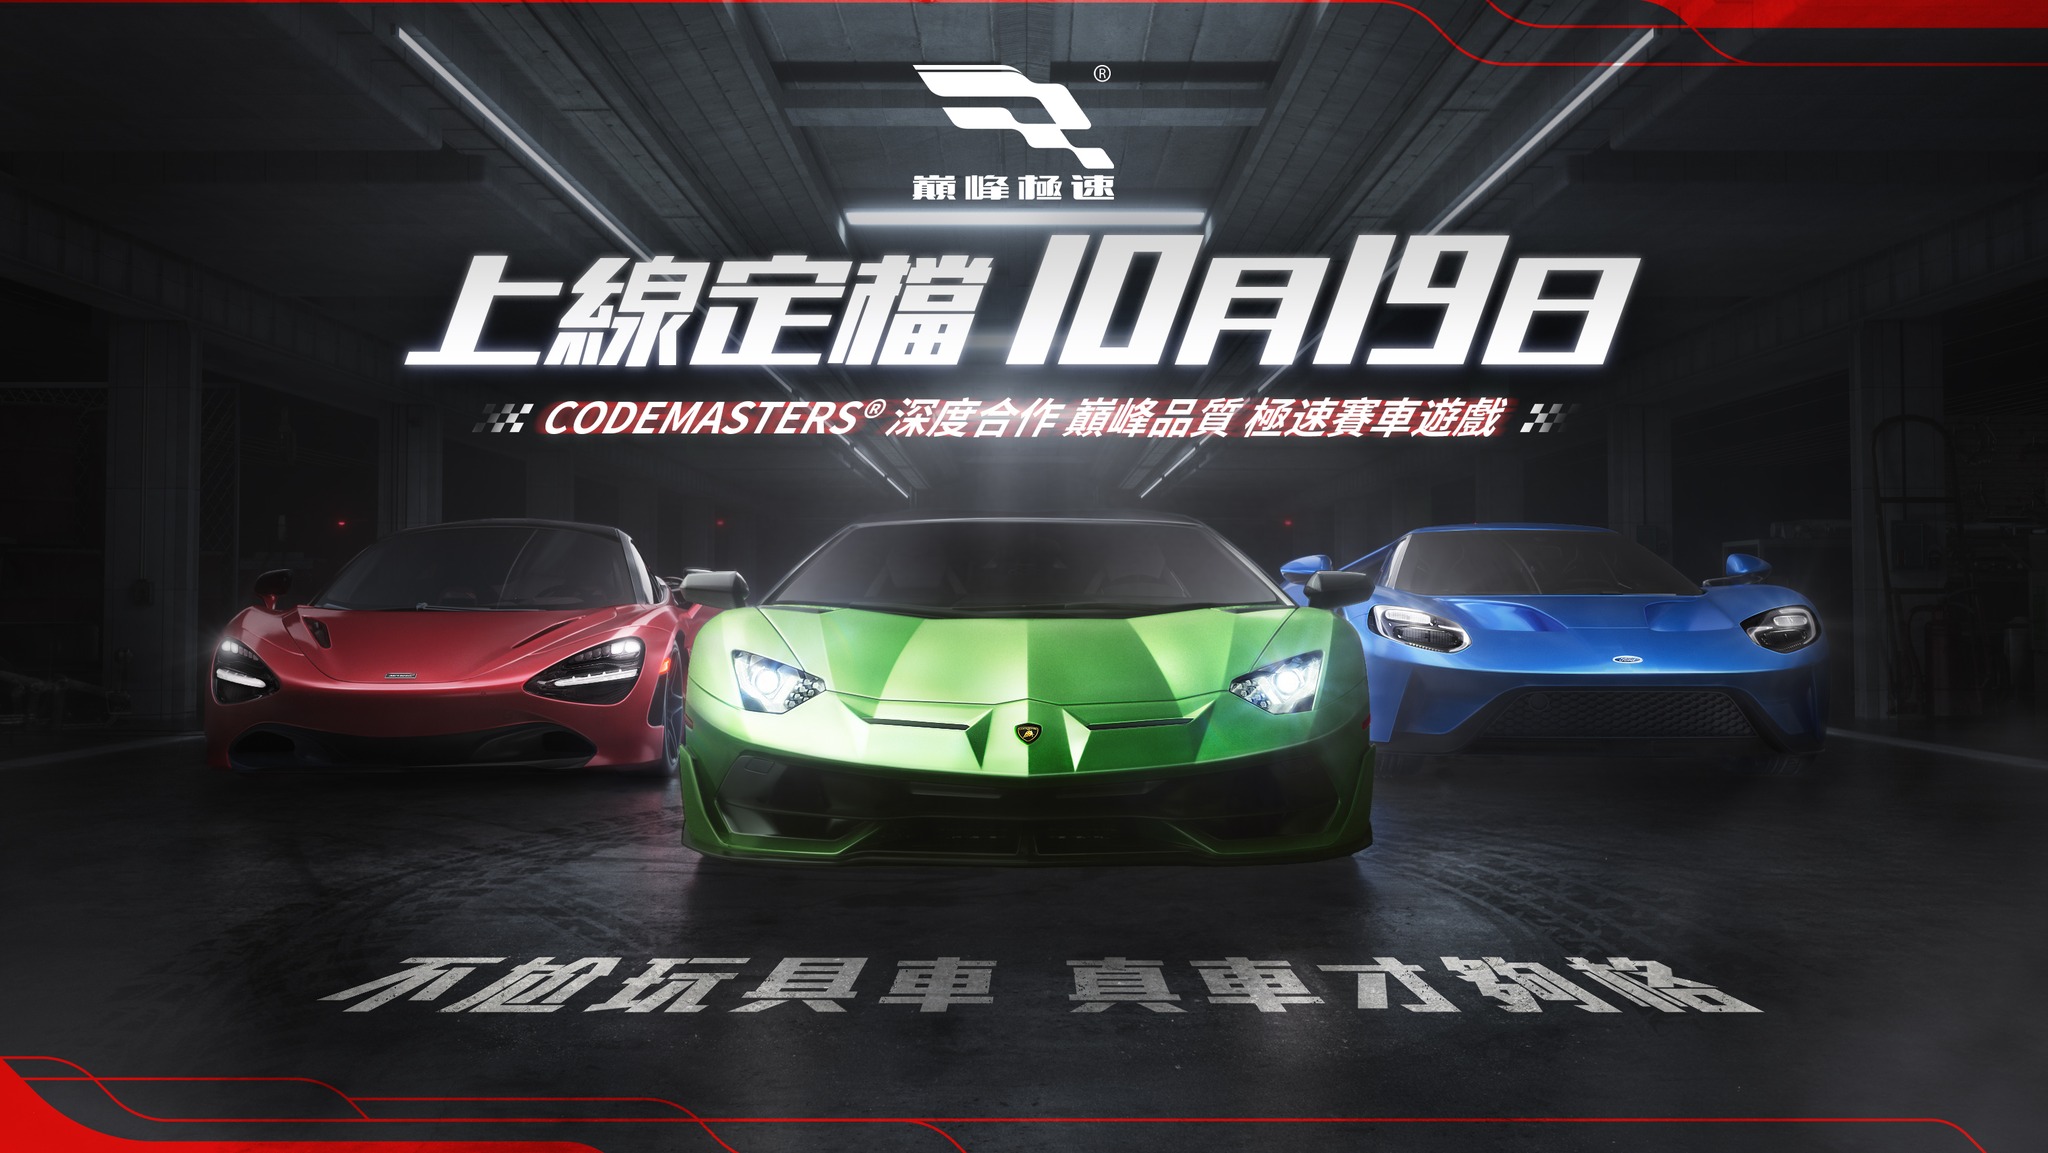 擬真競速賽車遊戲《巔峰極速》定於10月19日上線